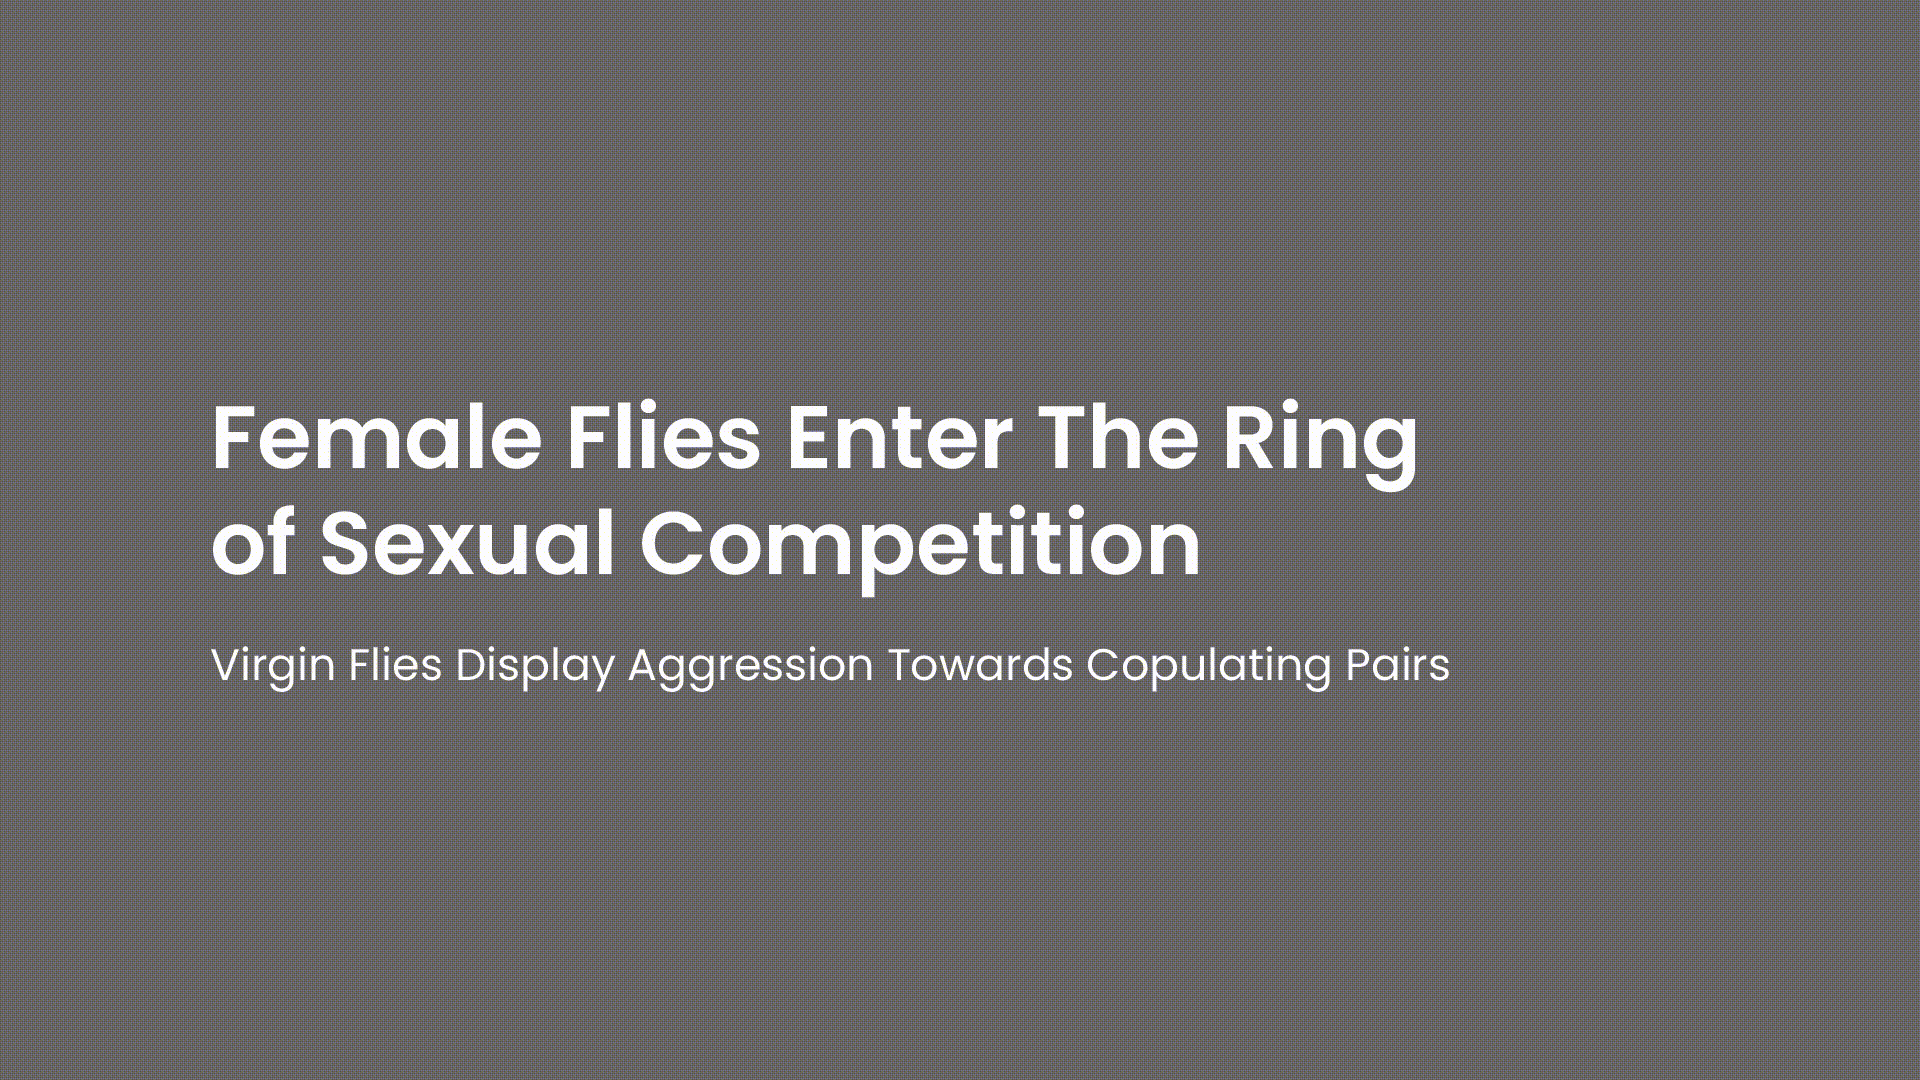 As moscas também entram no ringue da competição sexual